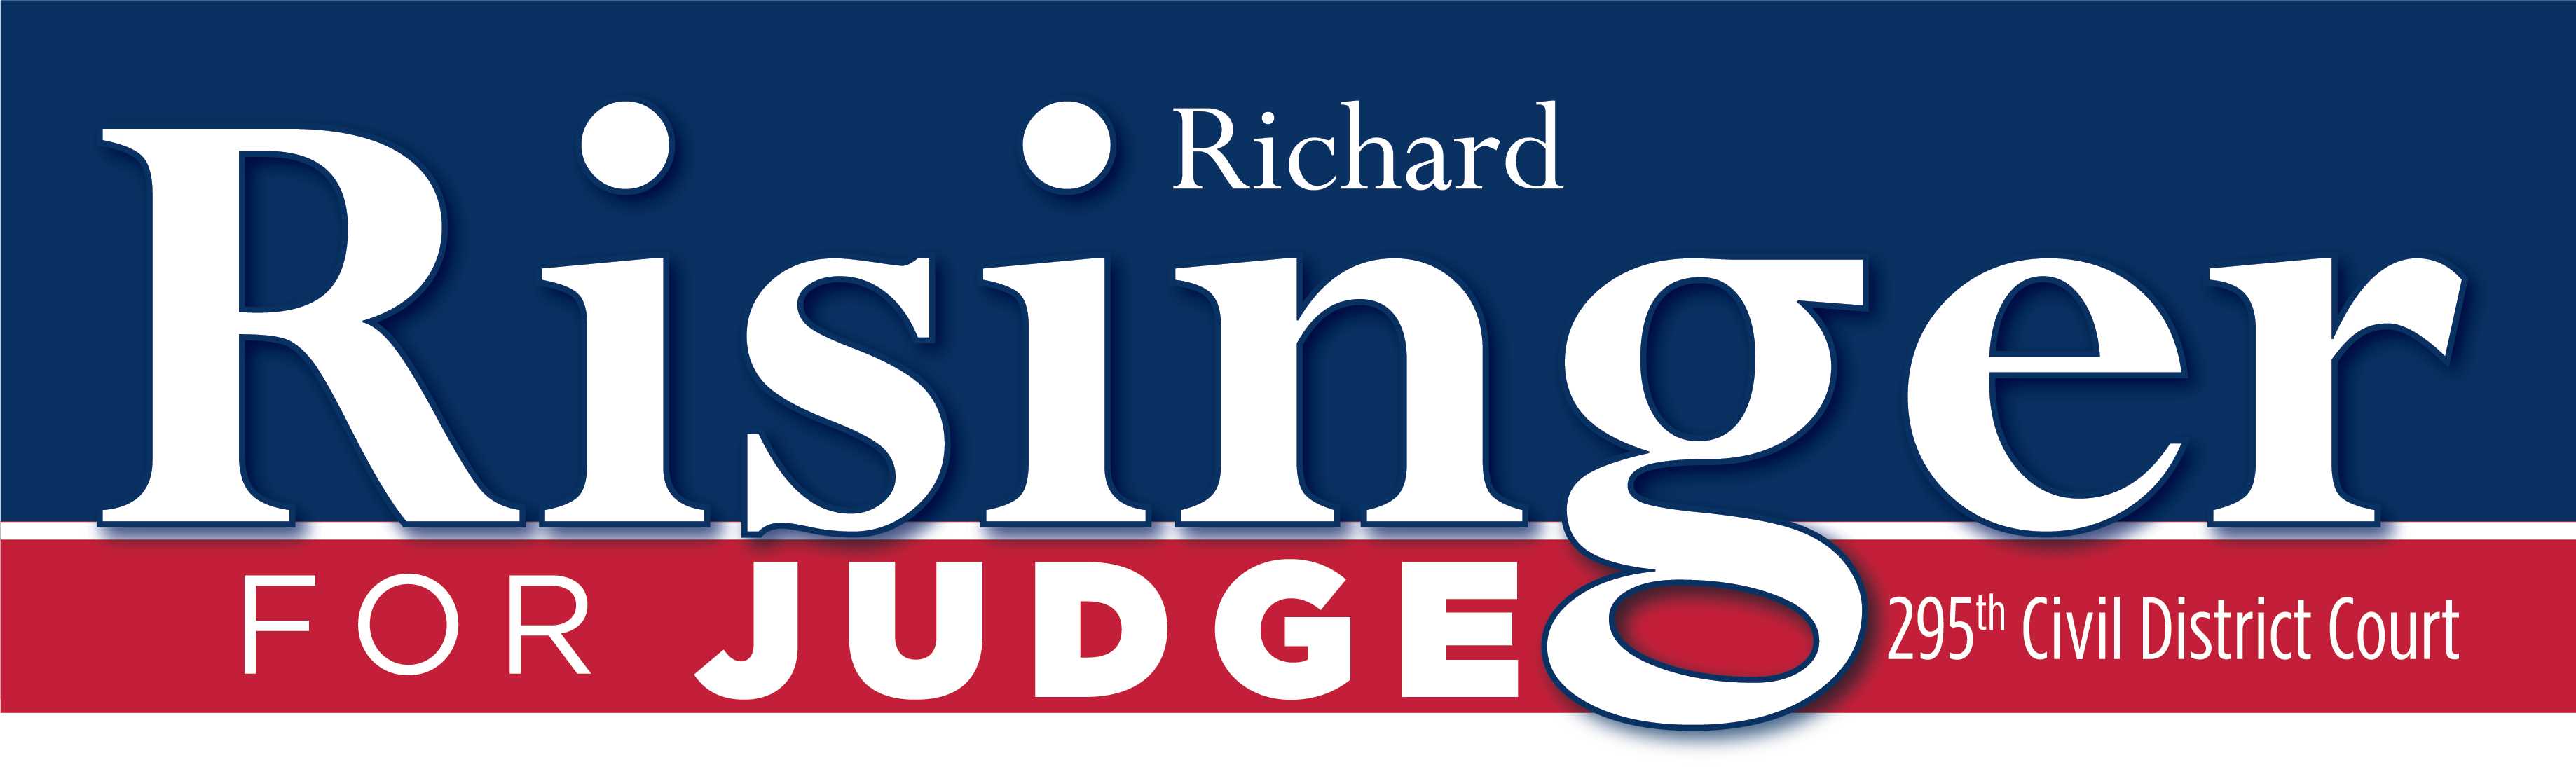 Richard Risinger For Judge logo